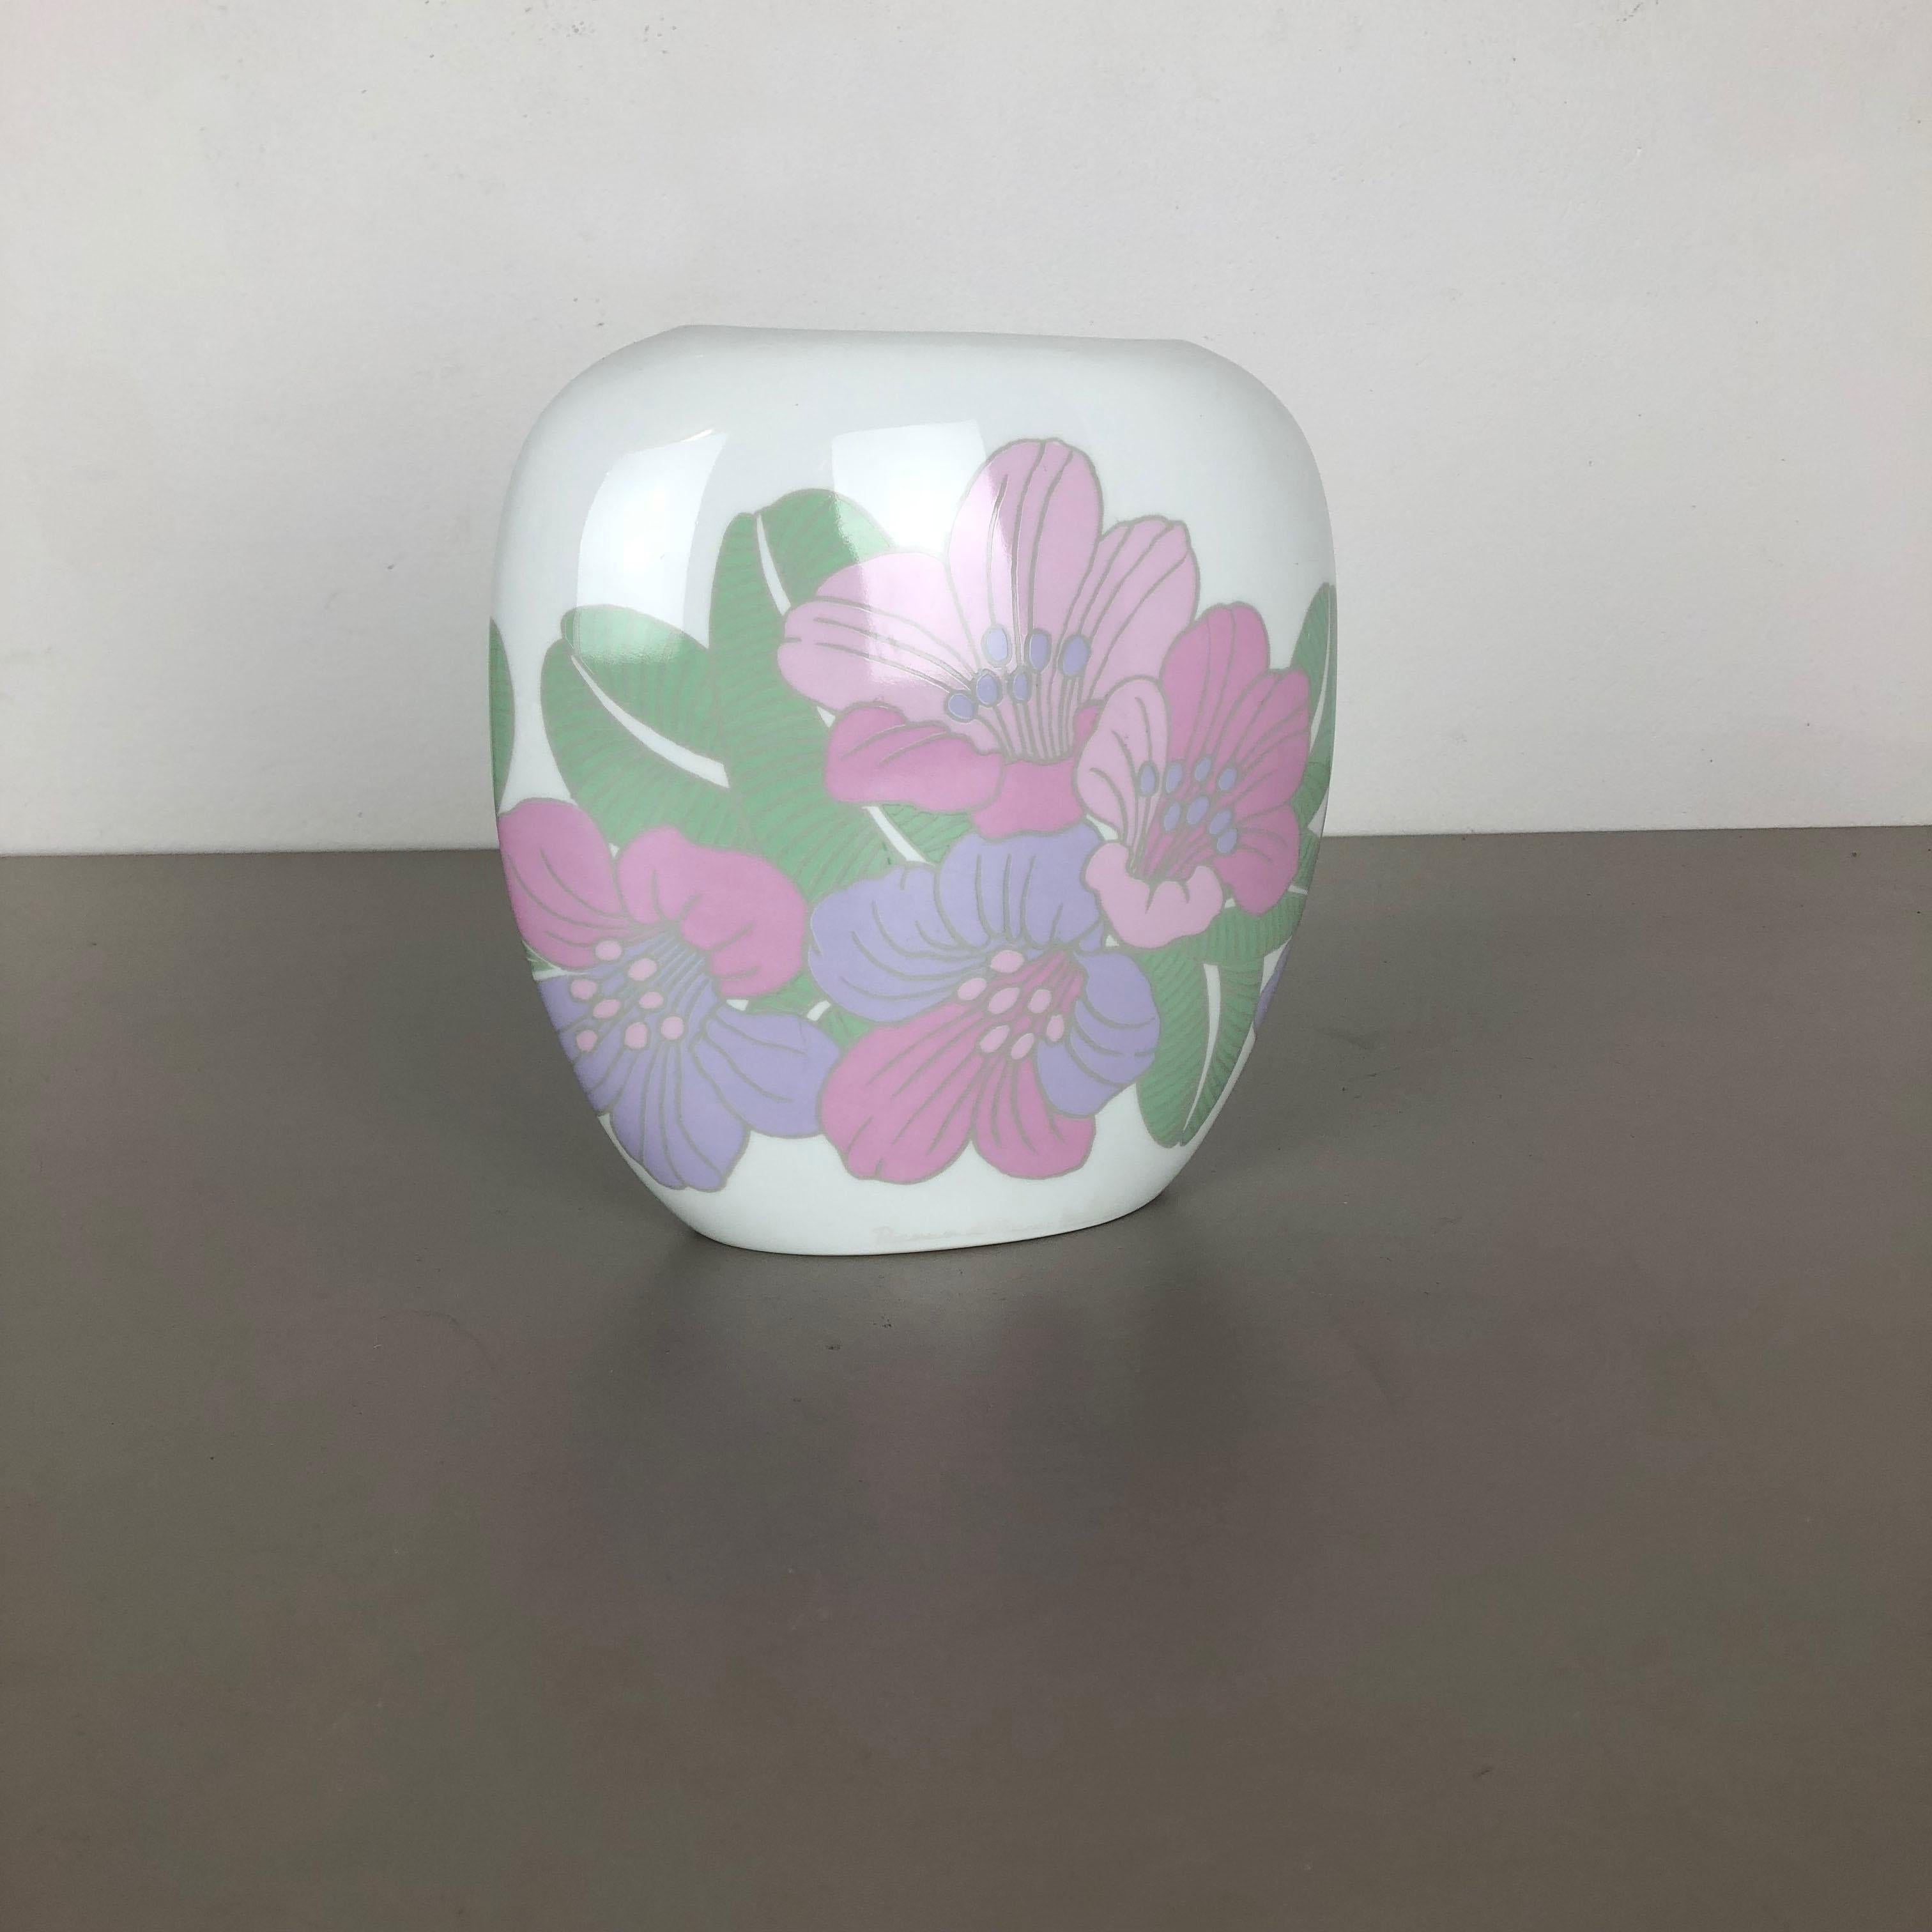 Article :

Vase en porcelaine Op Art avec illustration de fleurs colorées 


Producteur :

Rosenthal, Allemagne


Concepteur :

Rosemunde Nairac



Décennie :

1970s



Ce vase Op Art vintage original a été produit dans les